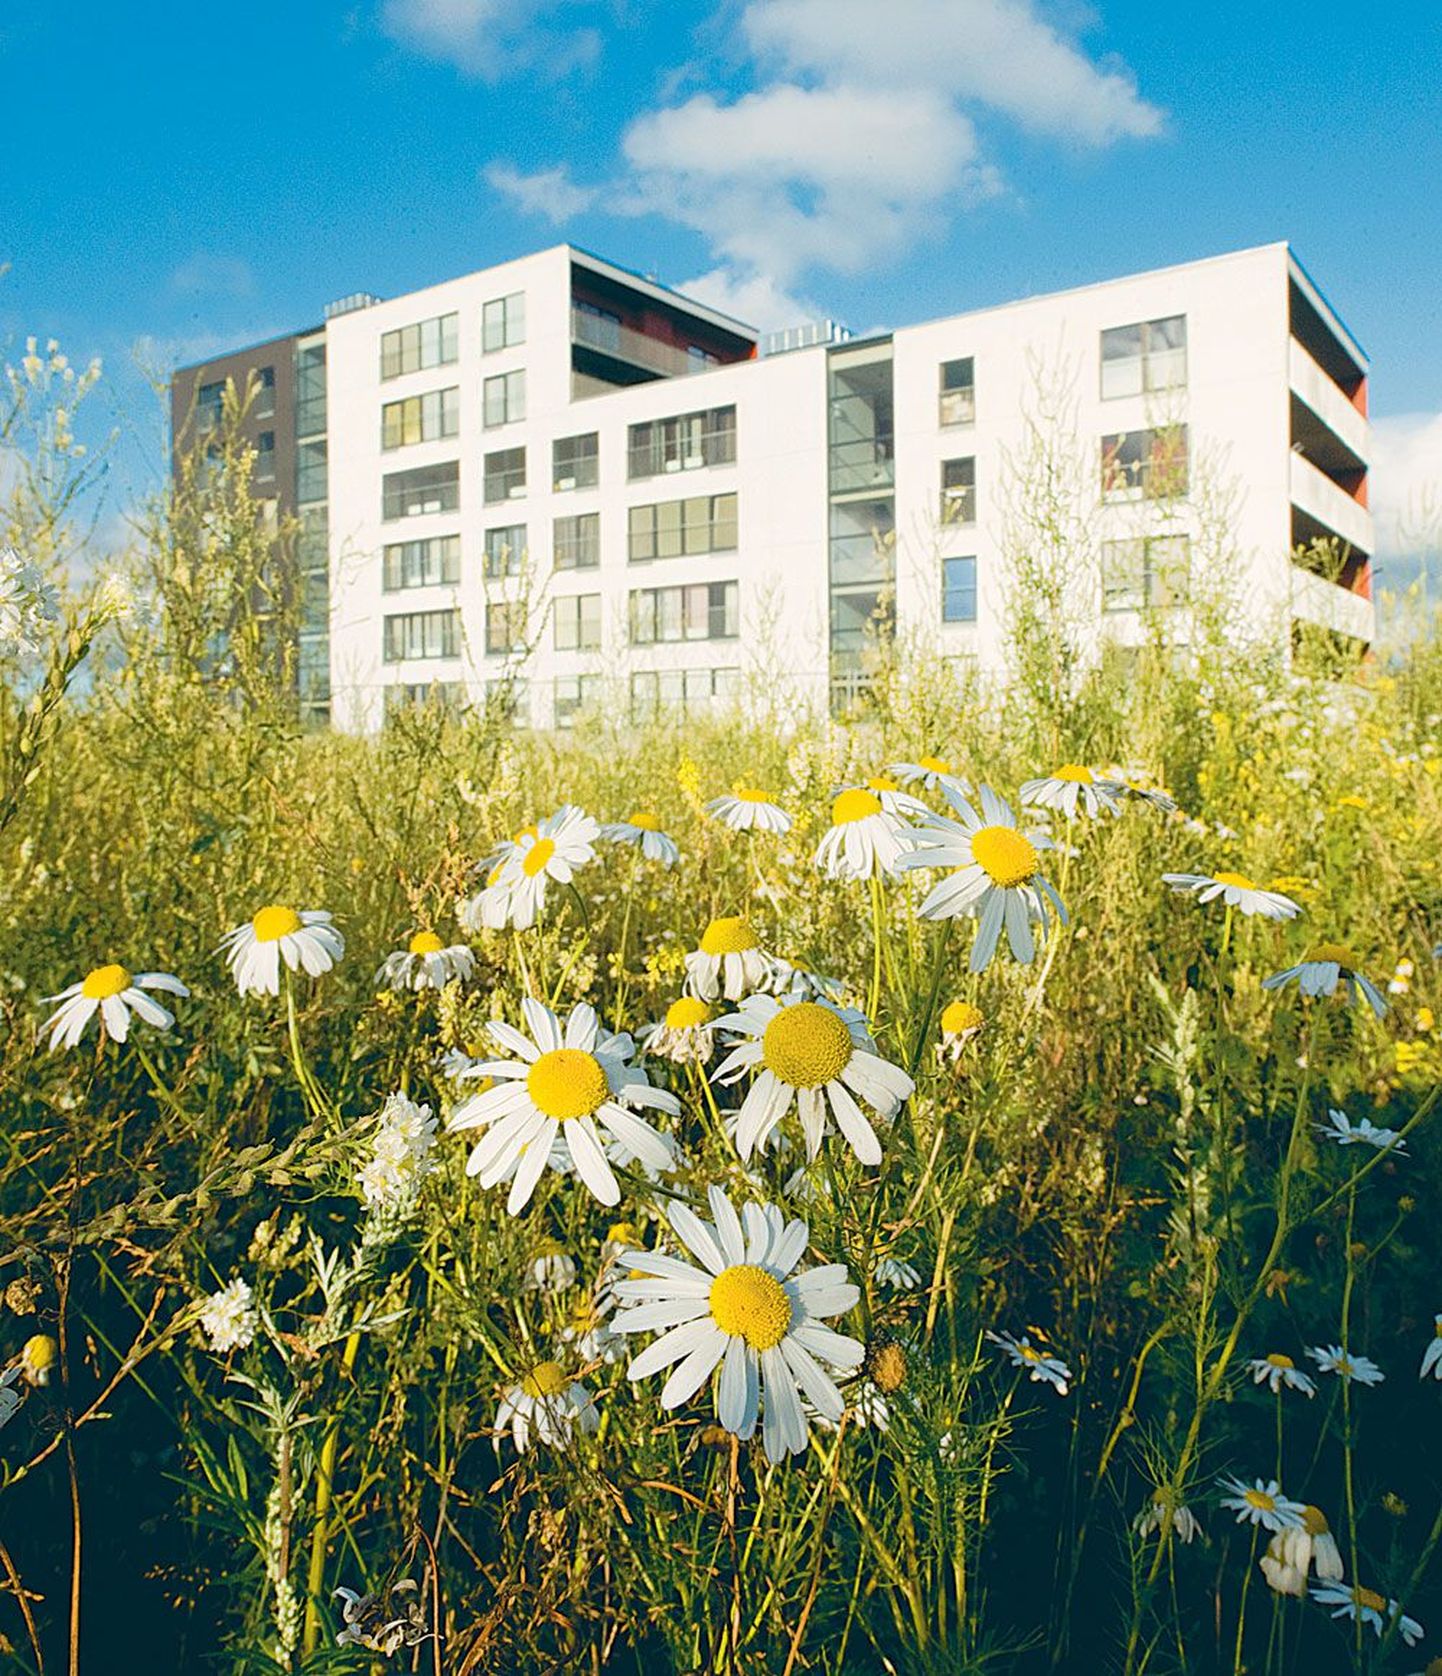 YIT Eesti loodab sügisel jätkata Mustamäel Mäepealse elamurajooni rajamist, kuhu peaks kokku kerkima 15 korrusmaja ligi 600 korteriga. Mõned majad on juba valmis.